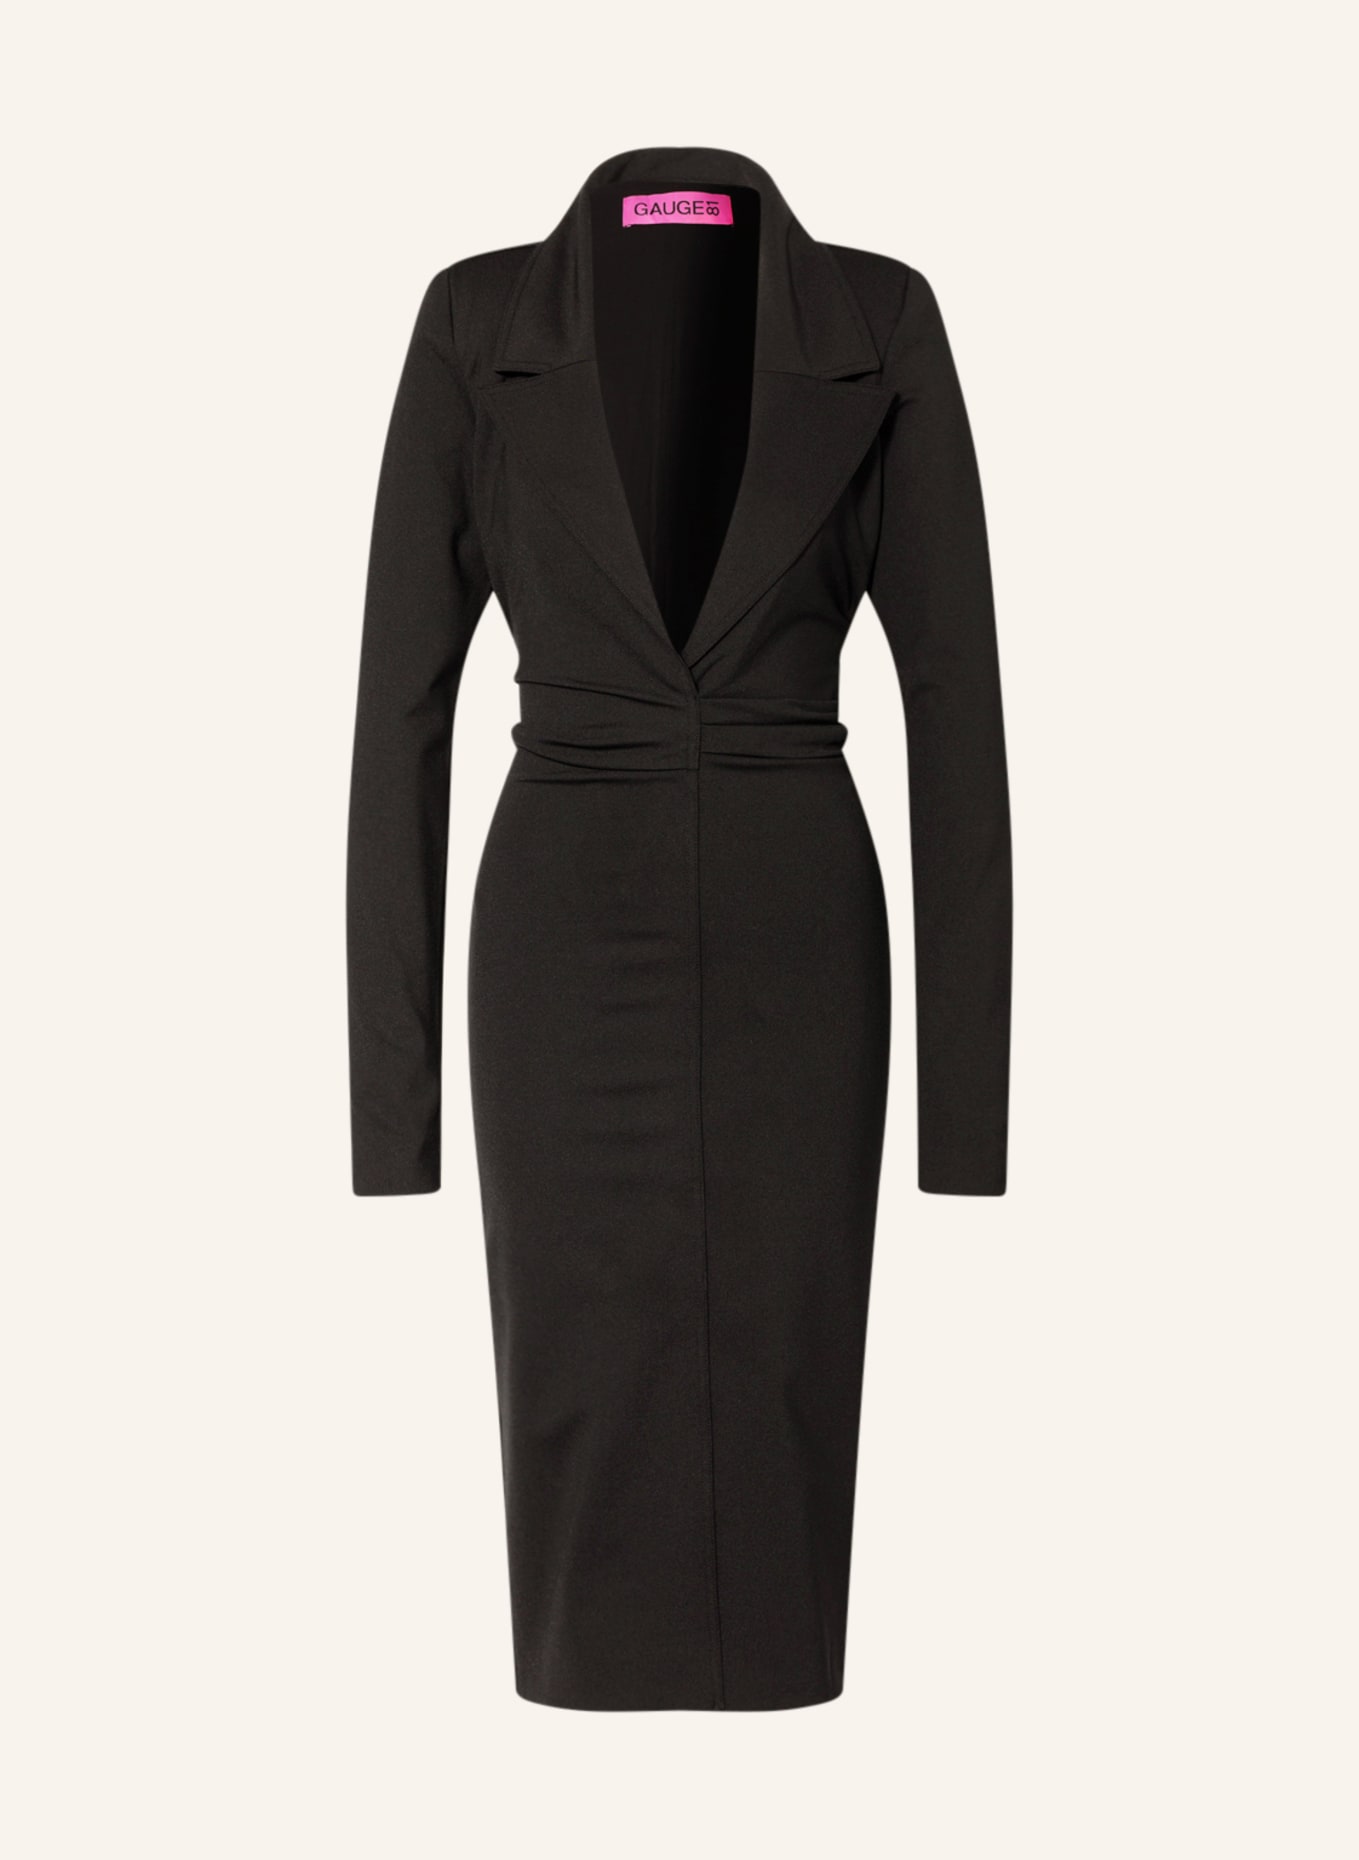 GAUGE81 Blazer dress MOATA, Color: BLACK (Image 1)